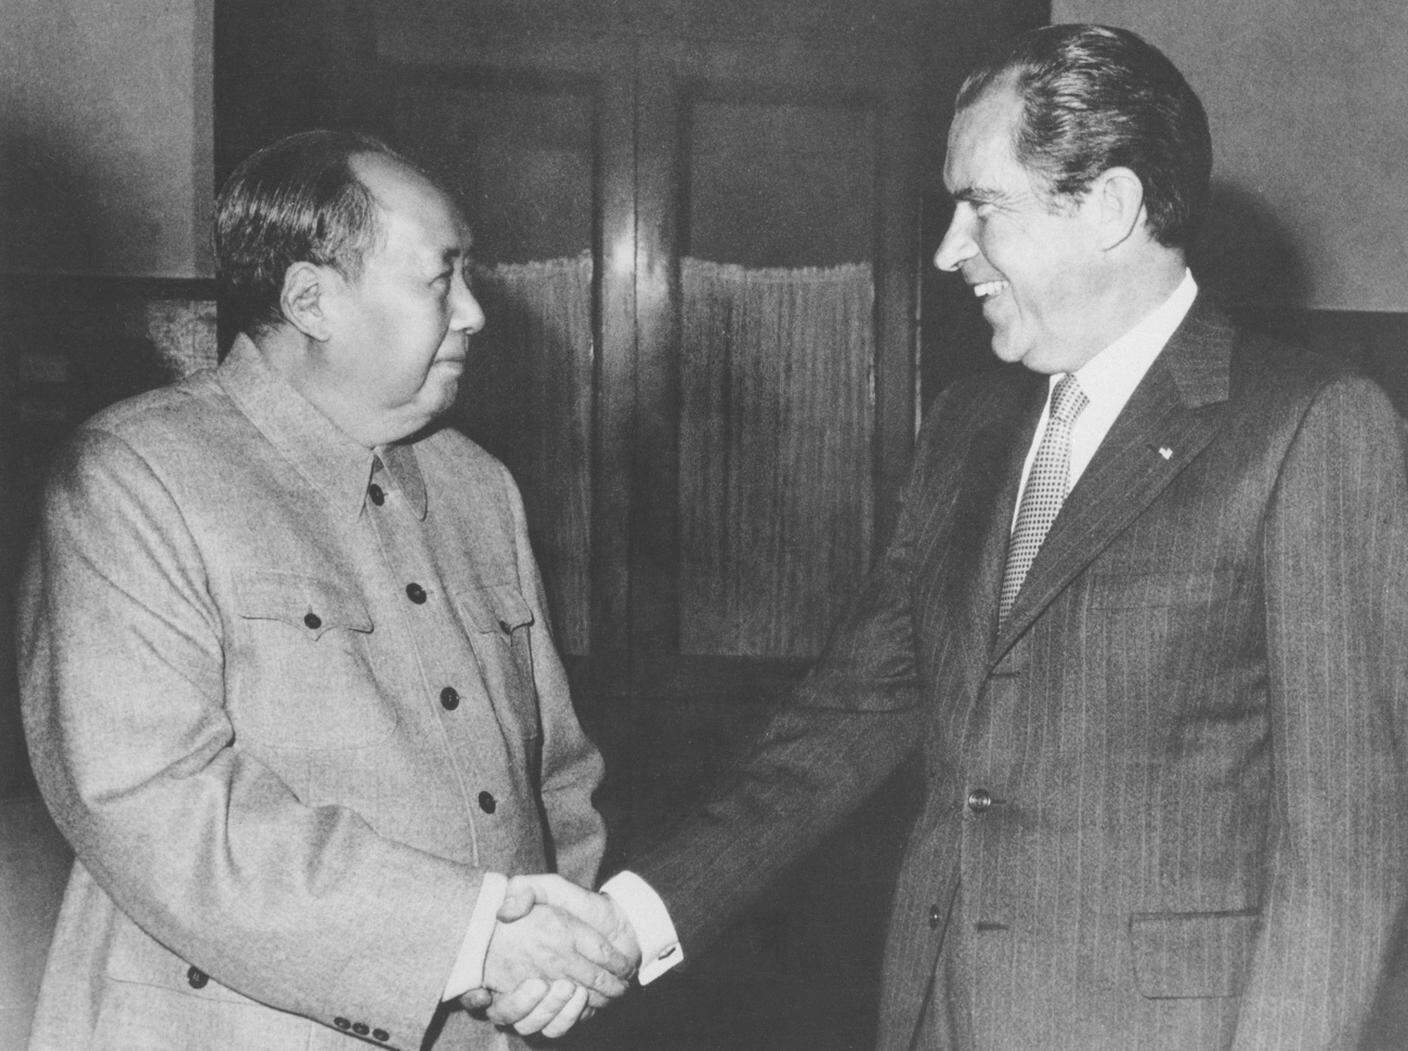 La stretta di mano fra Mao e Nixon nel 1972